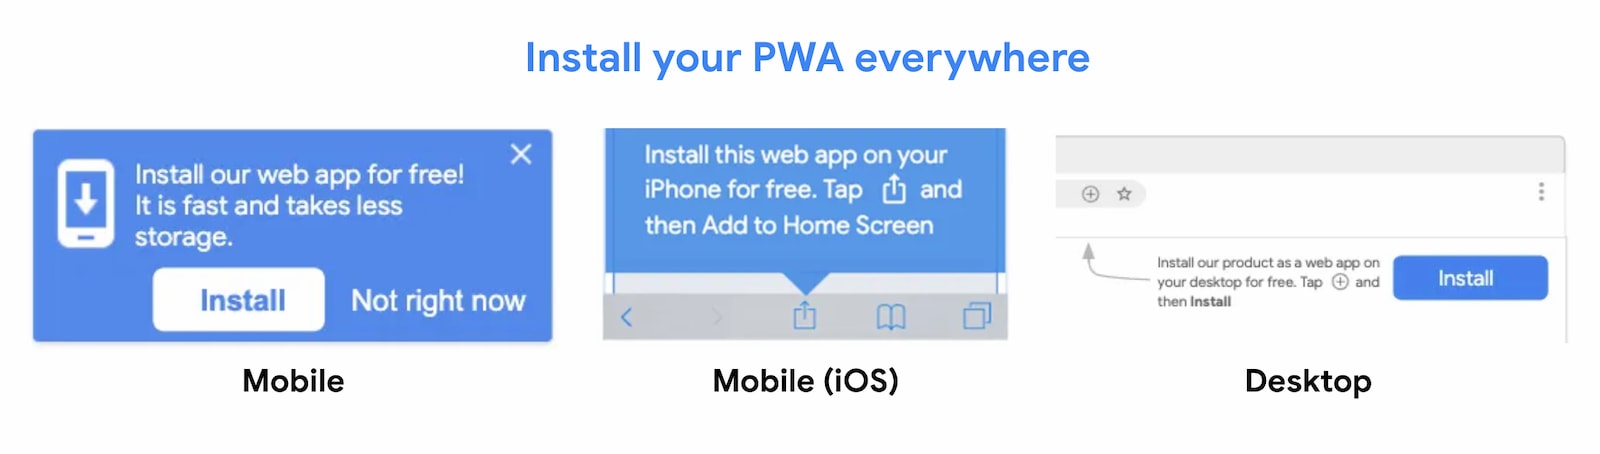 يمكن تثبيت تطبيقات الويب التقدّمية (PWA) في كل مكان.